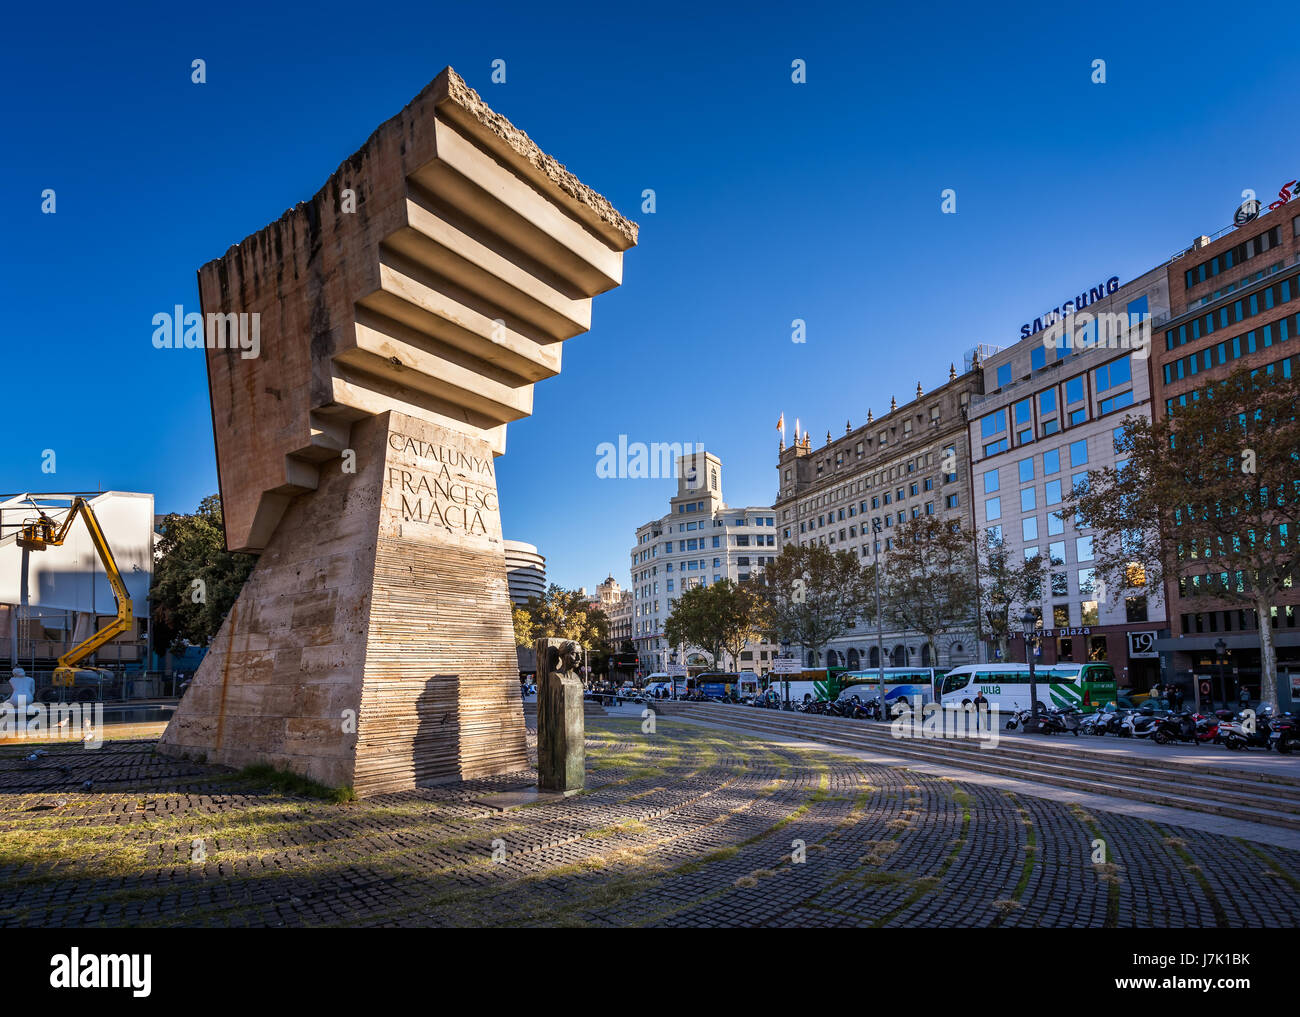 Barcelone, Espagne - 15 NOVEMBRE 2014 : Monument à Francesc Macia sur la Placa de Catalnya (Catalogne Square). Le carré occupe une superficie d'environ 50, Banque D'Images